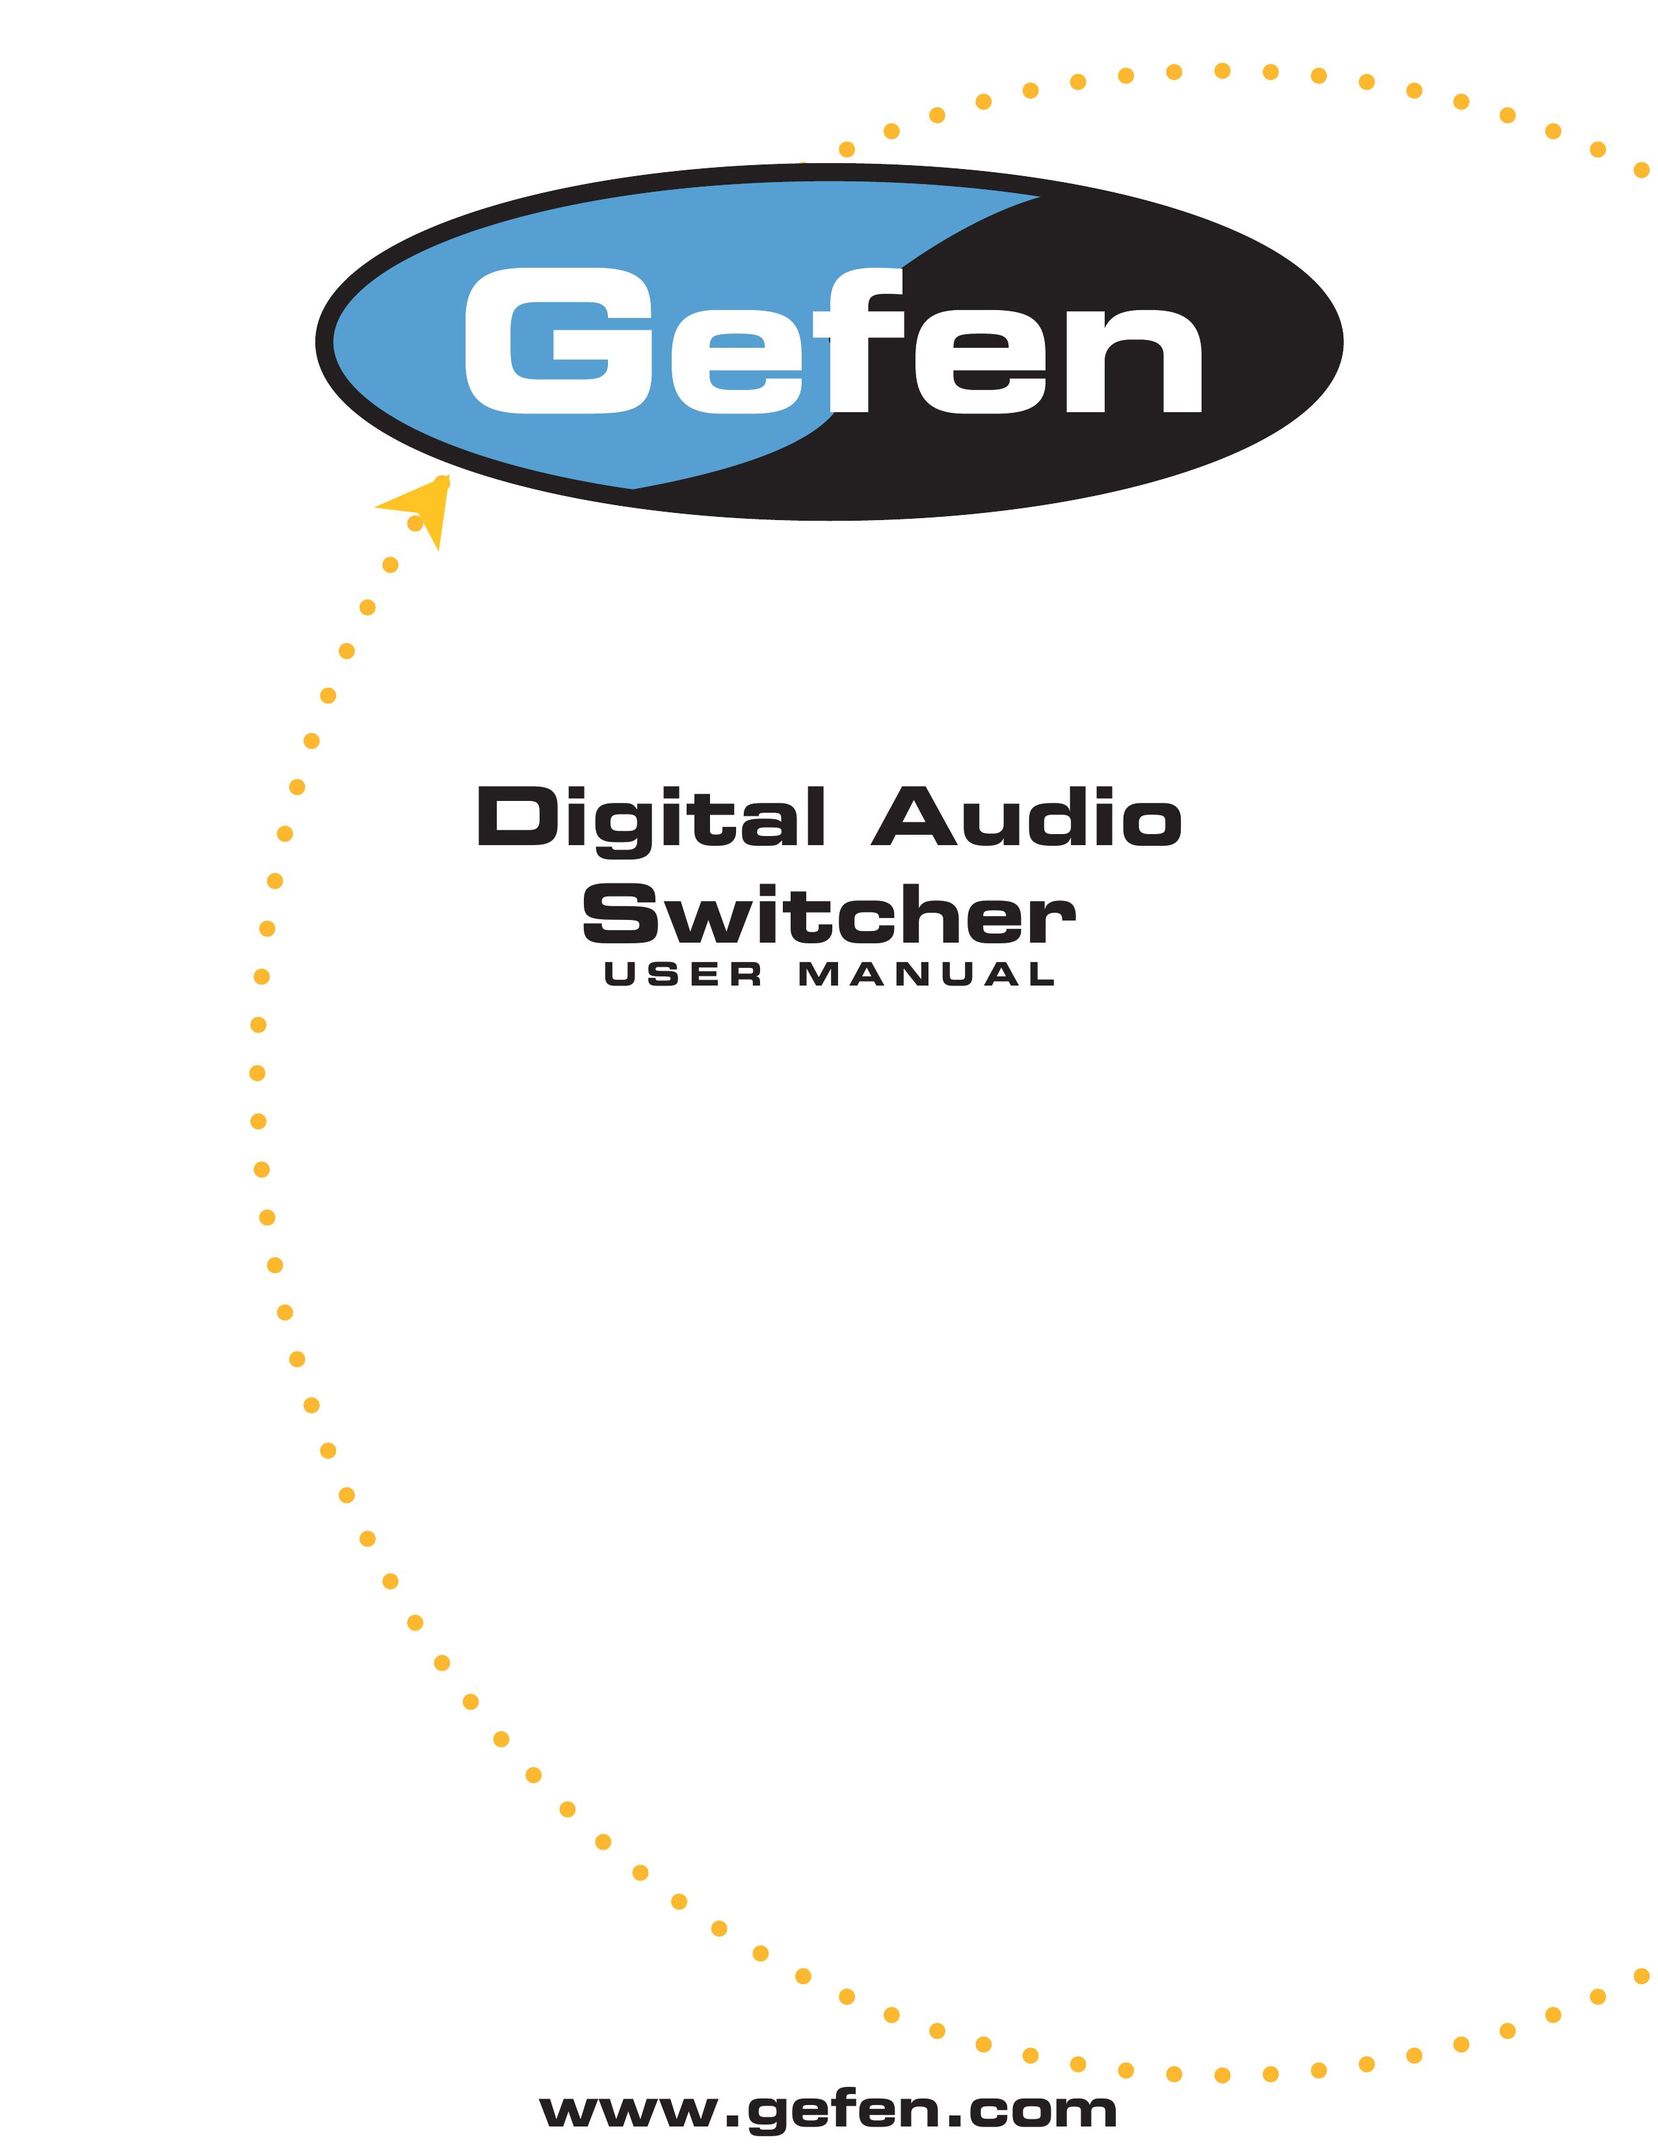 Gefen Digital Audio Switcher Switch User Manual